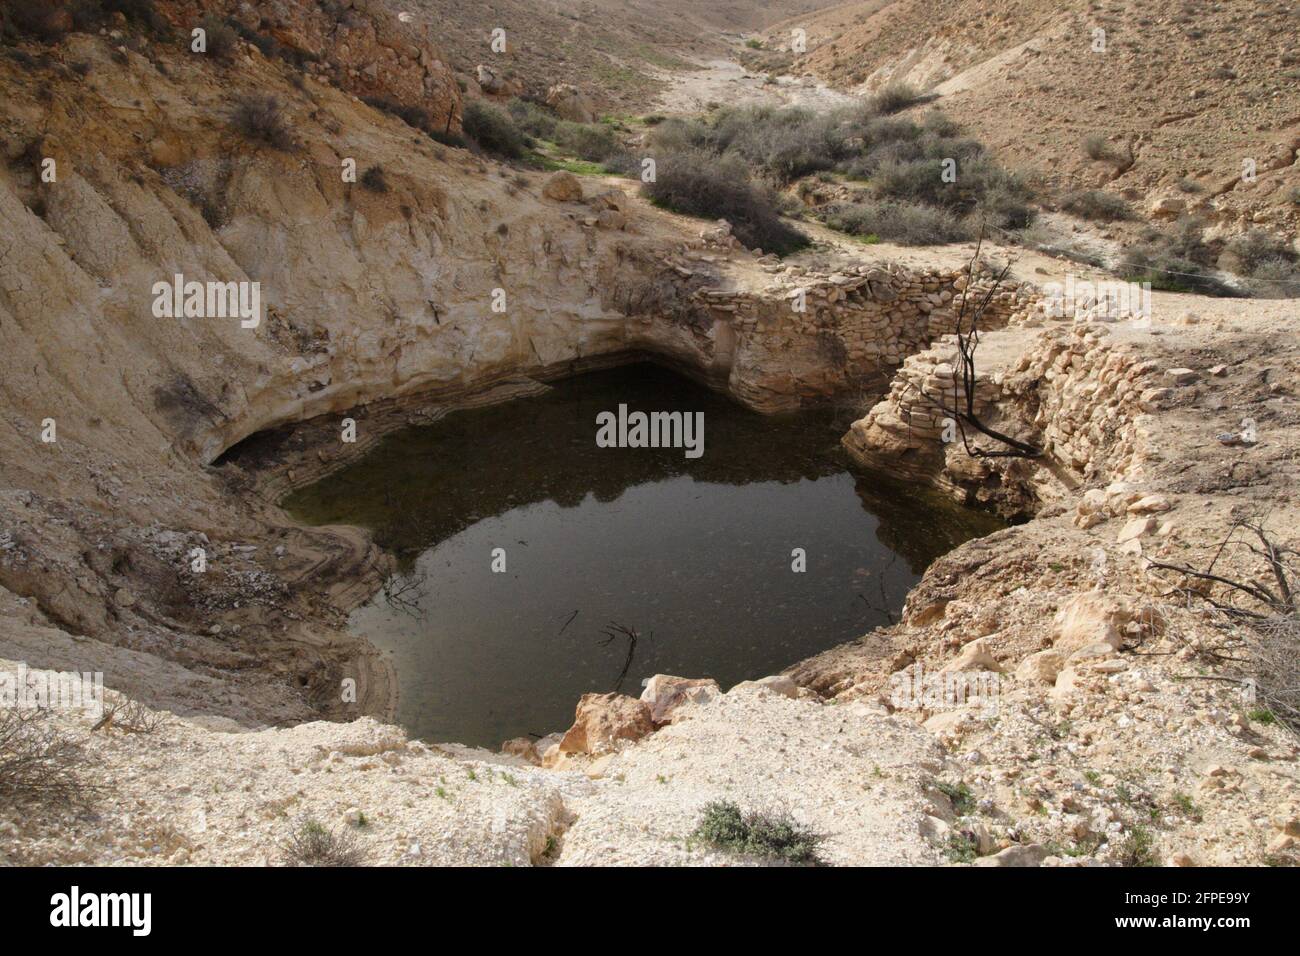 Ancien réservoir d'eau construit pour une utilisation agricole par les anciens Israélites il y a 3000 ans, crues éclair l'eau dans le désert lit sec de la rivière l'a rempli. Banque D'Images